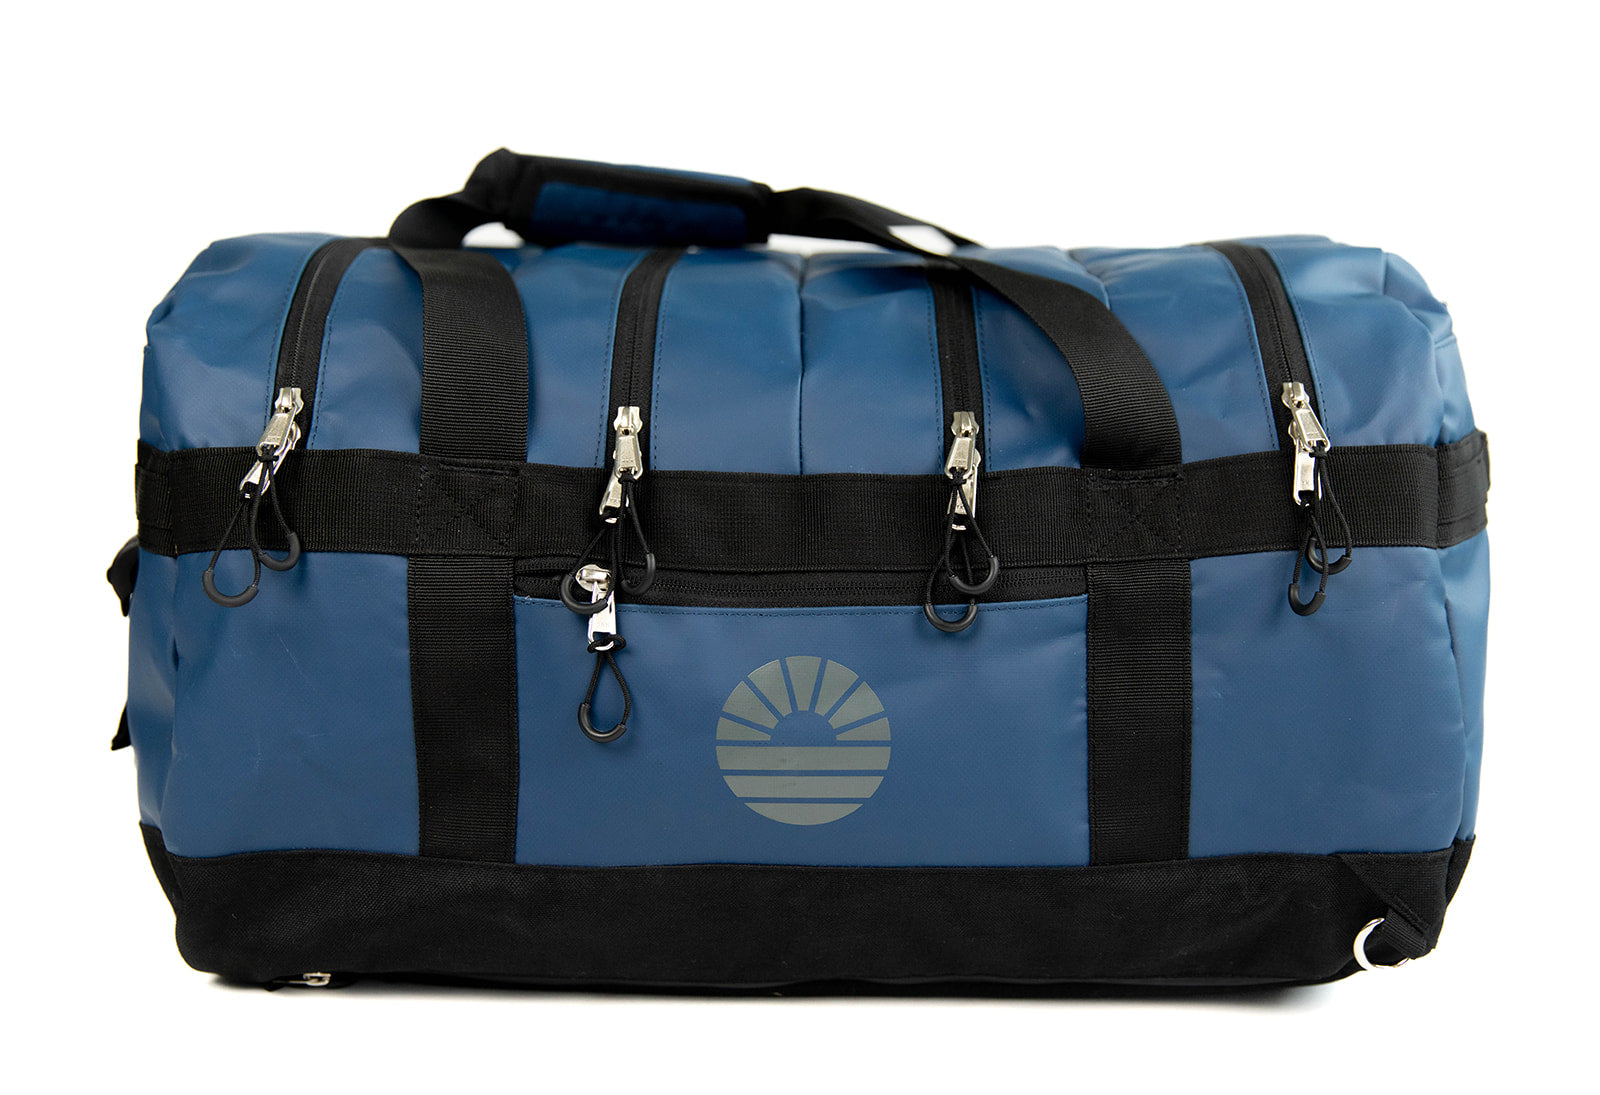 Family travel bags to organize you adventure. – TOBIQ